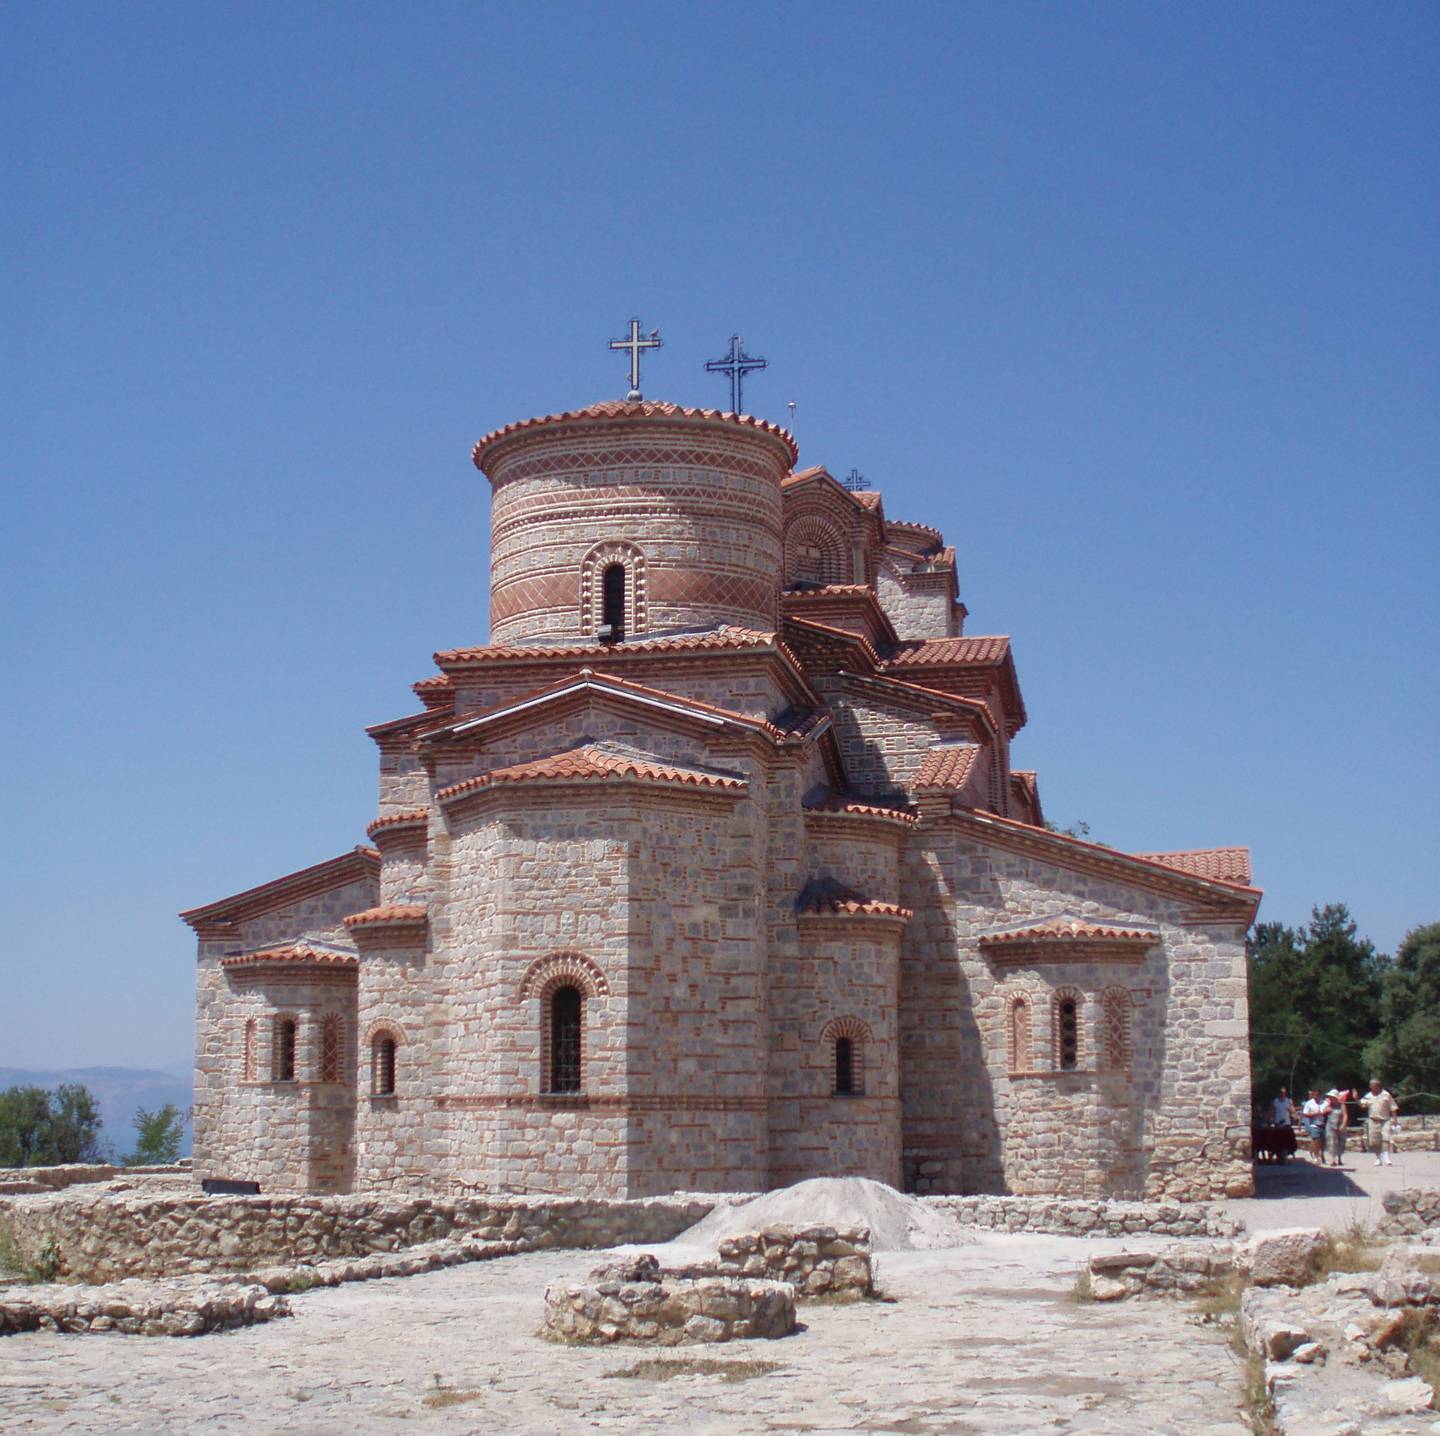 St. Klement og Pantheleimon-kirken i Nord-Makedonia, som er det billigste ferielandet i Europa, ifølge indeks